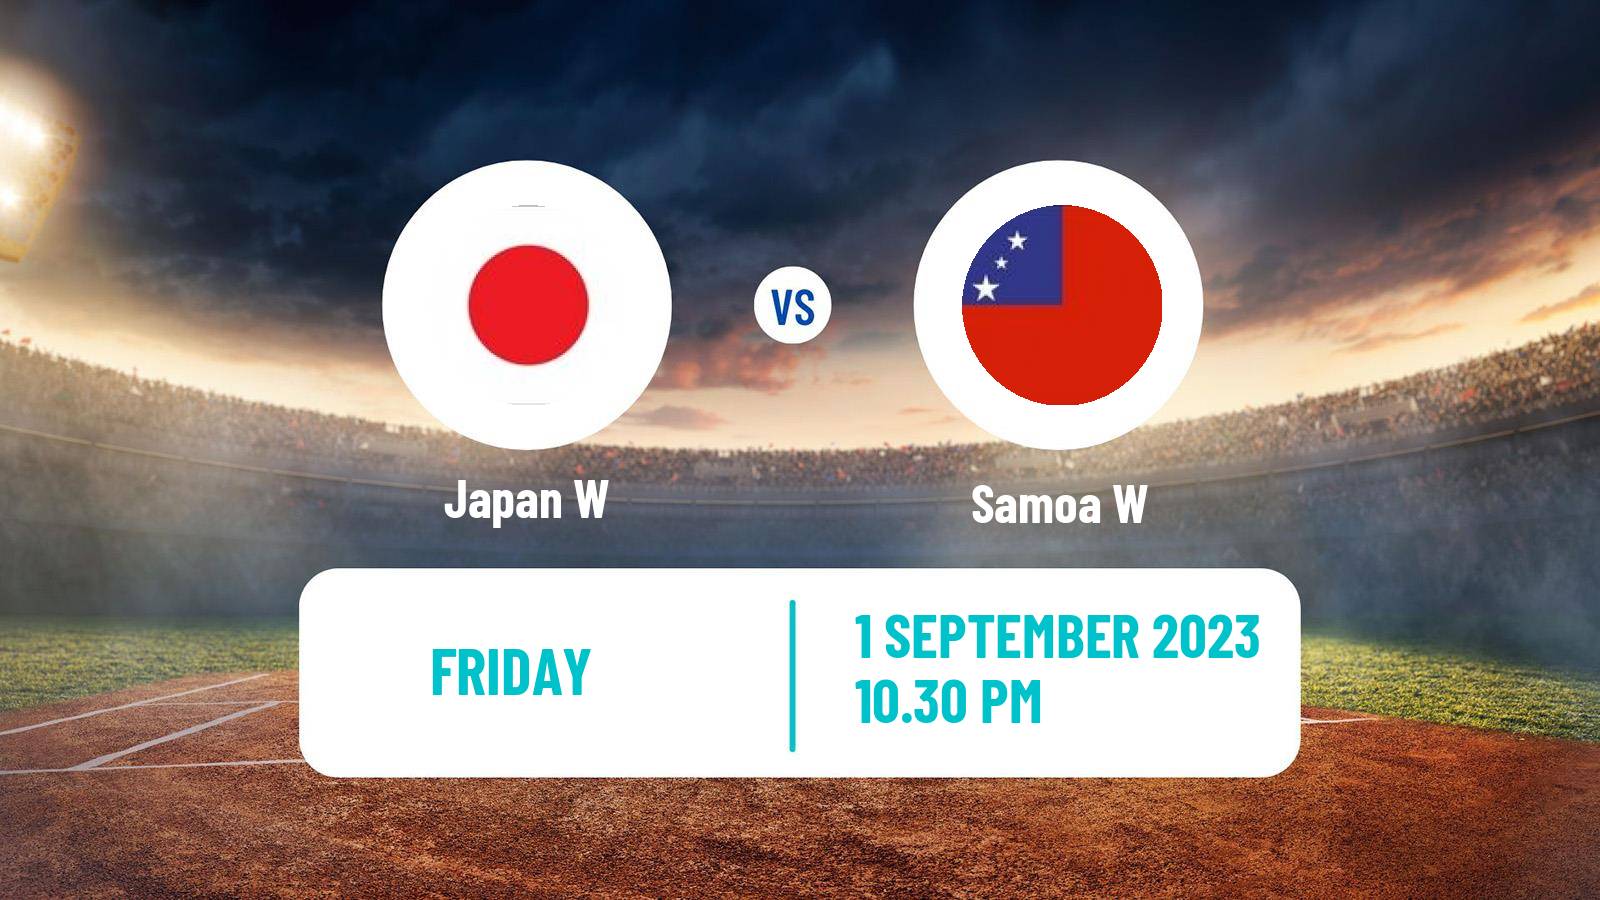 Cricket ICC World Twenty20 Women Japan W - Samoa W